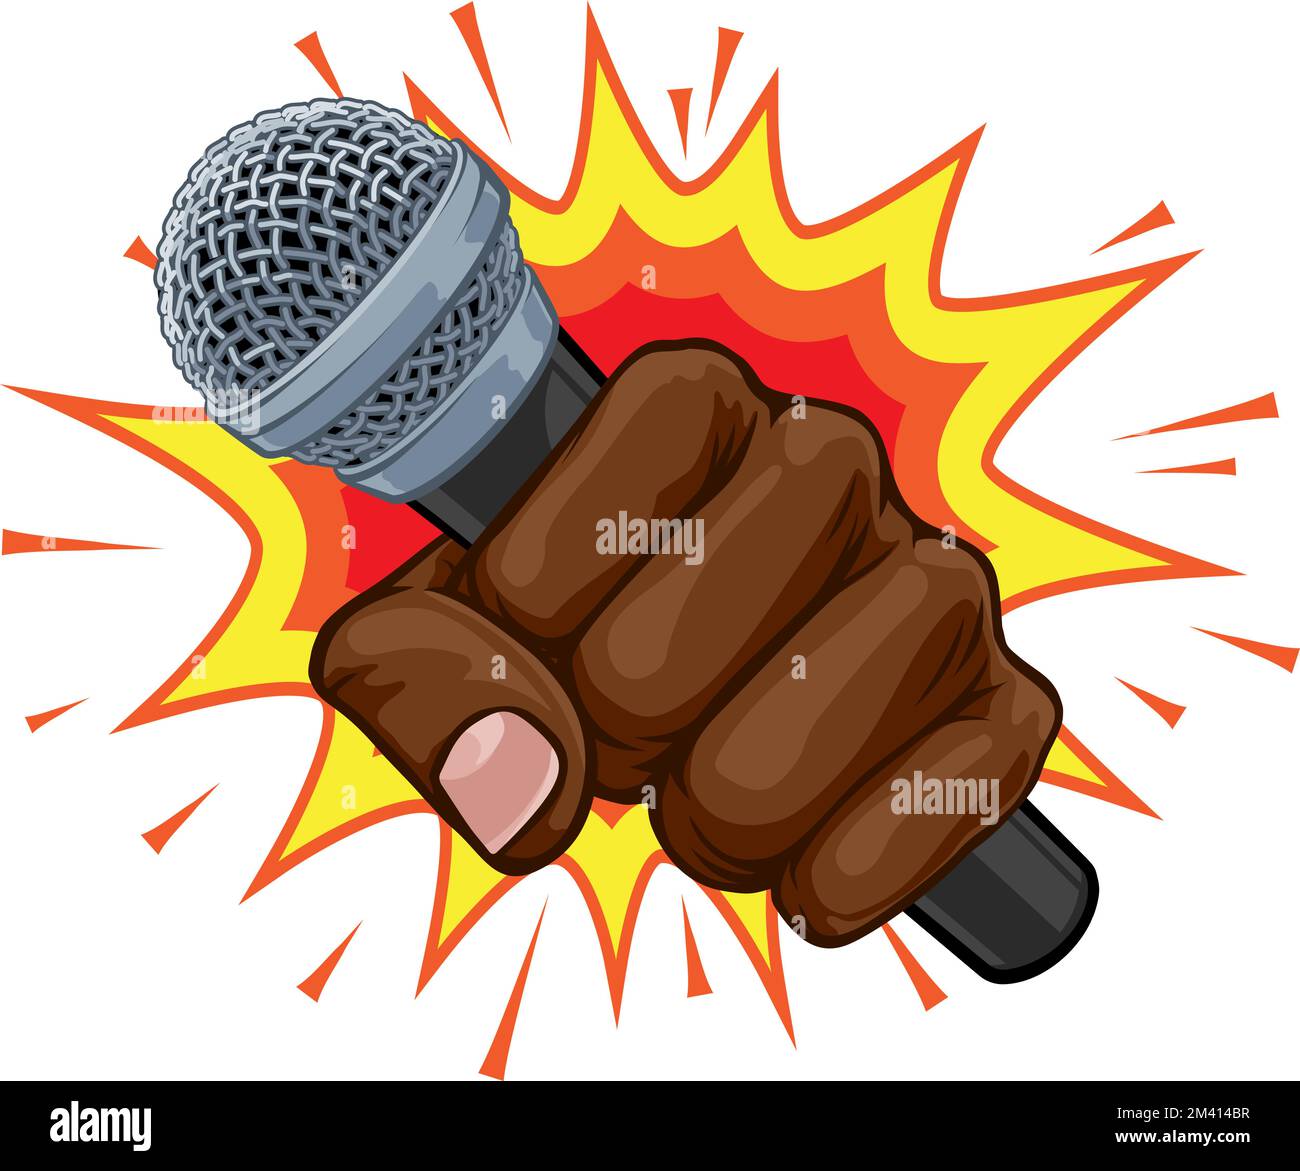 Microfono Fist mano esplosione Pop Art Cartoon Illustrazione Vettoriale